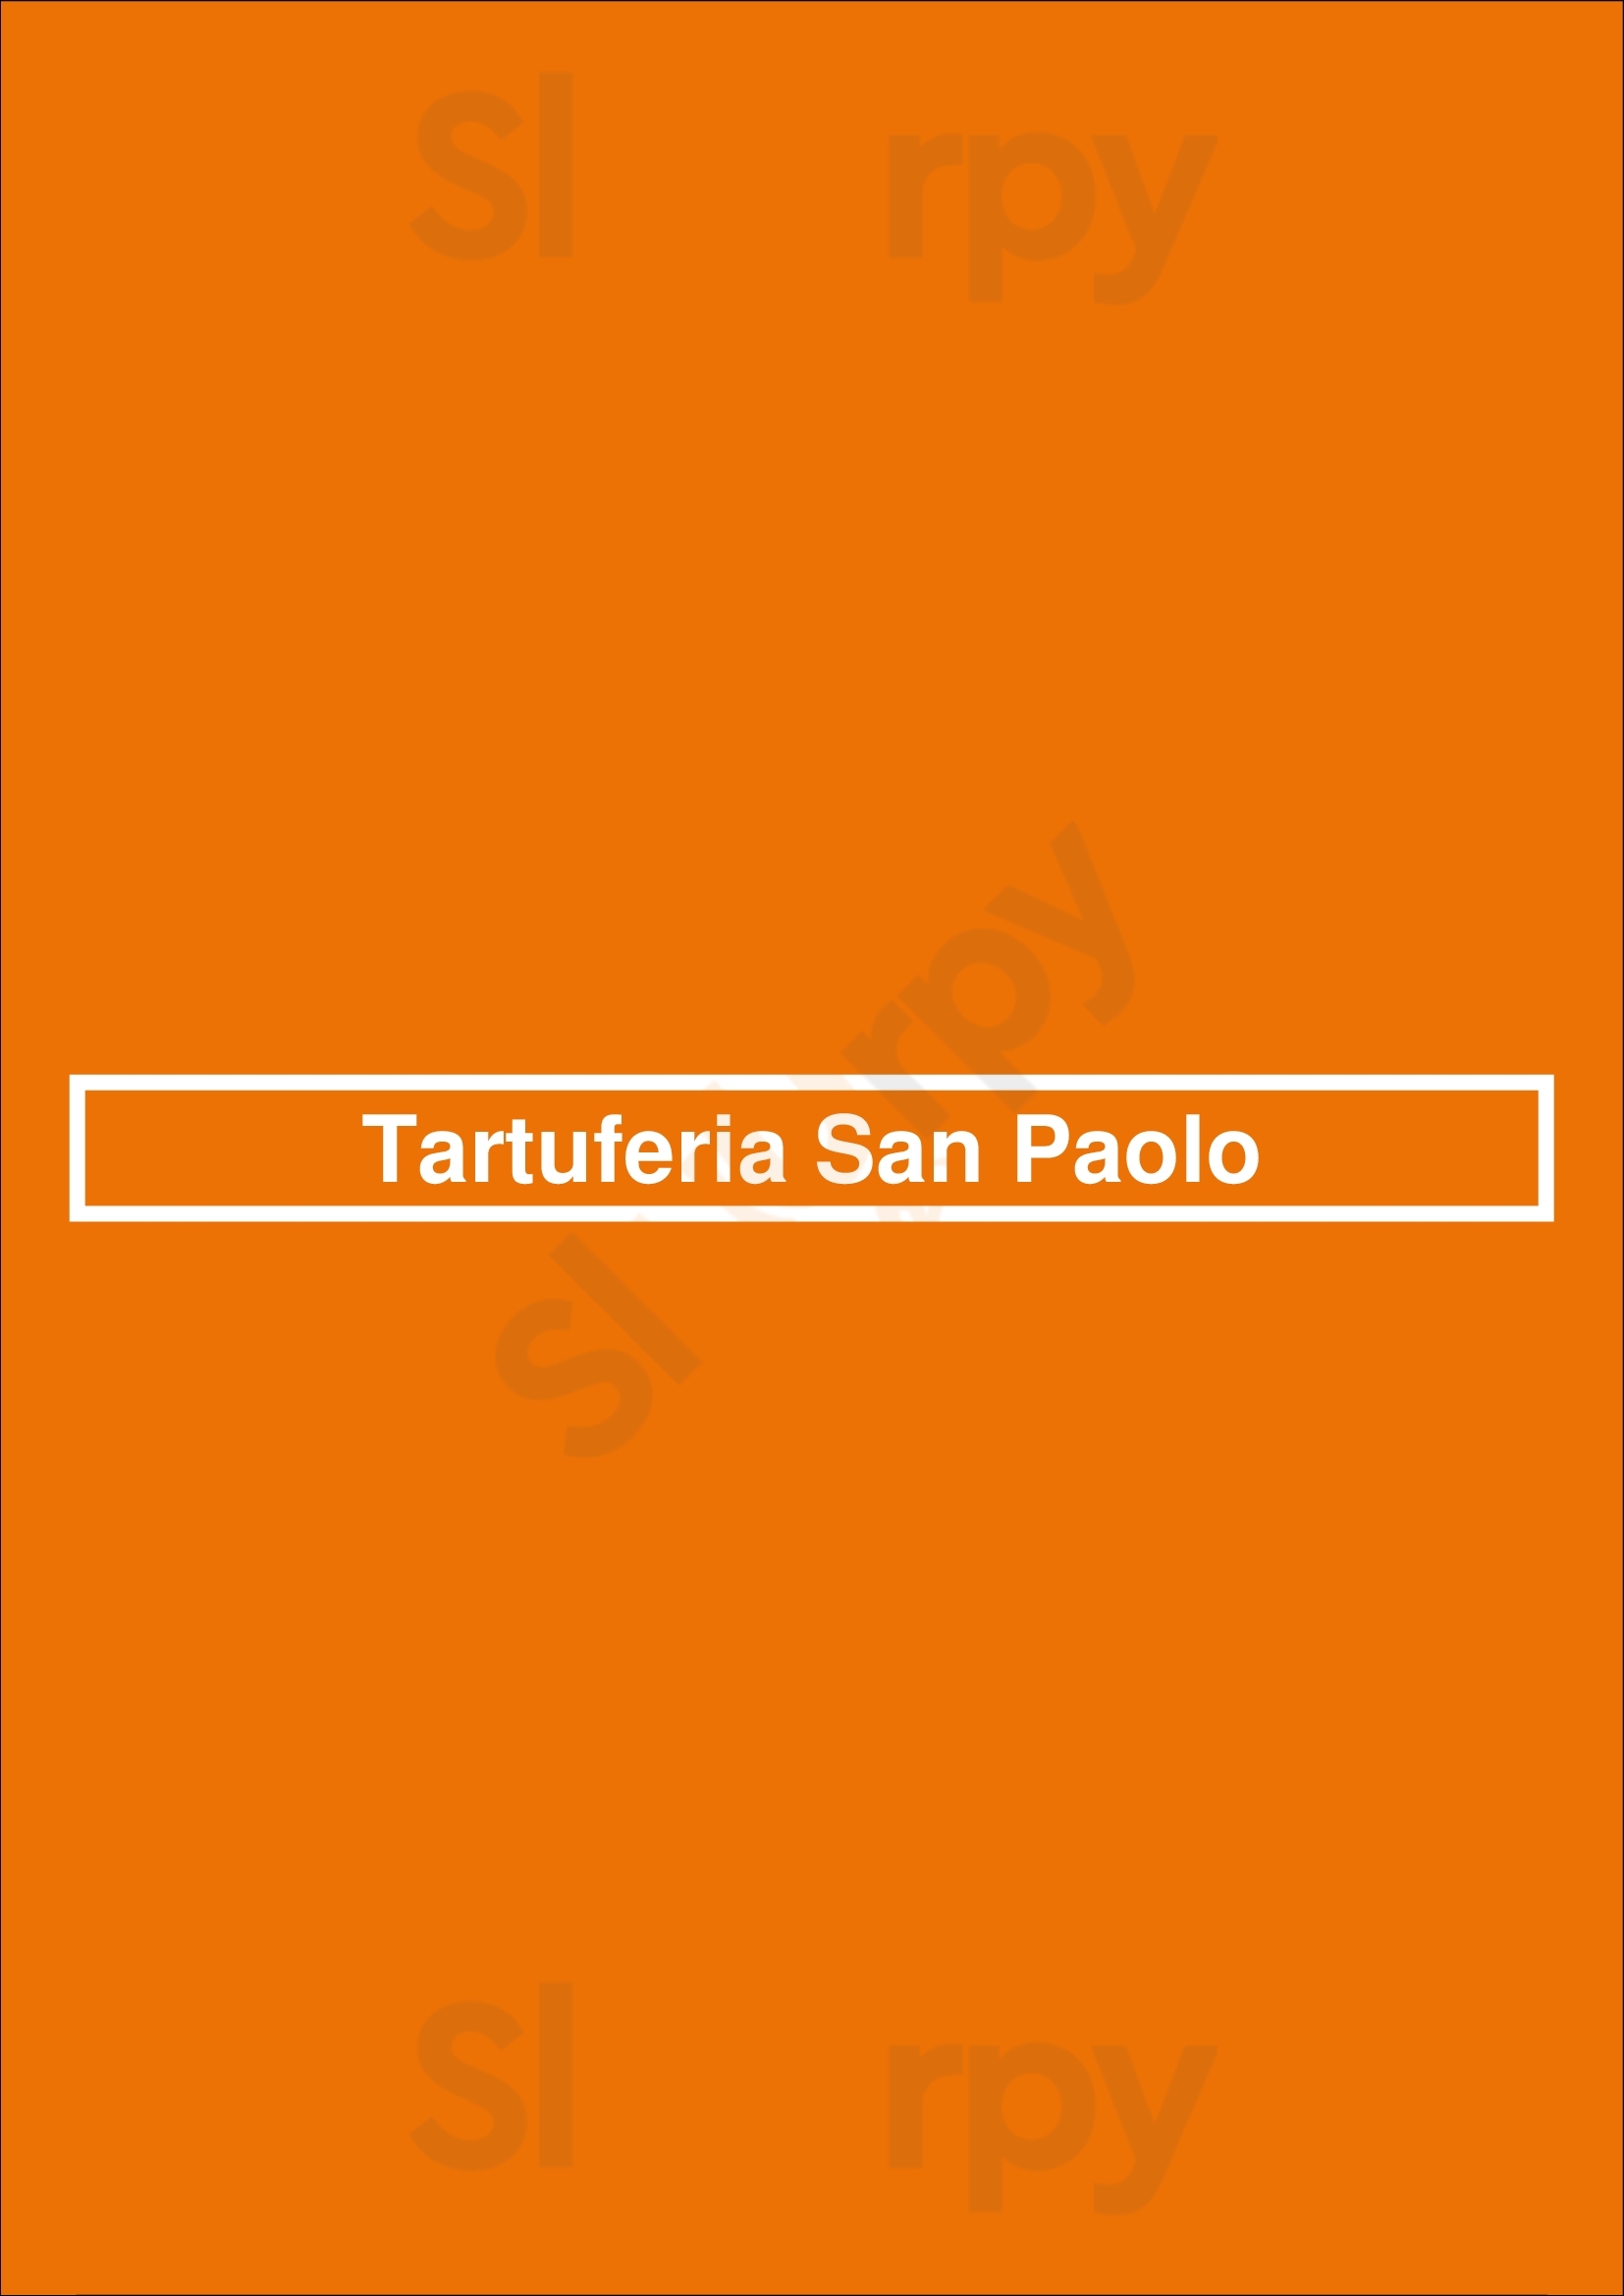 Tartuferia San Paolo São Paulo Menu - 1